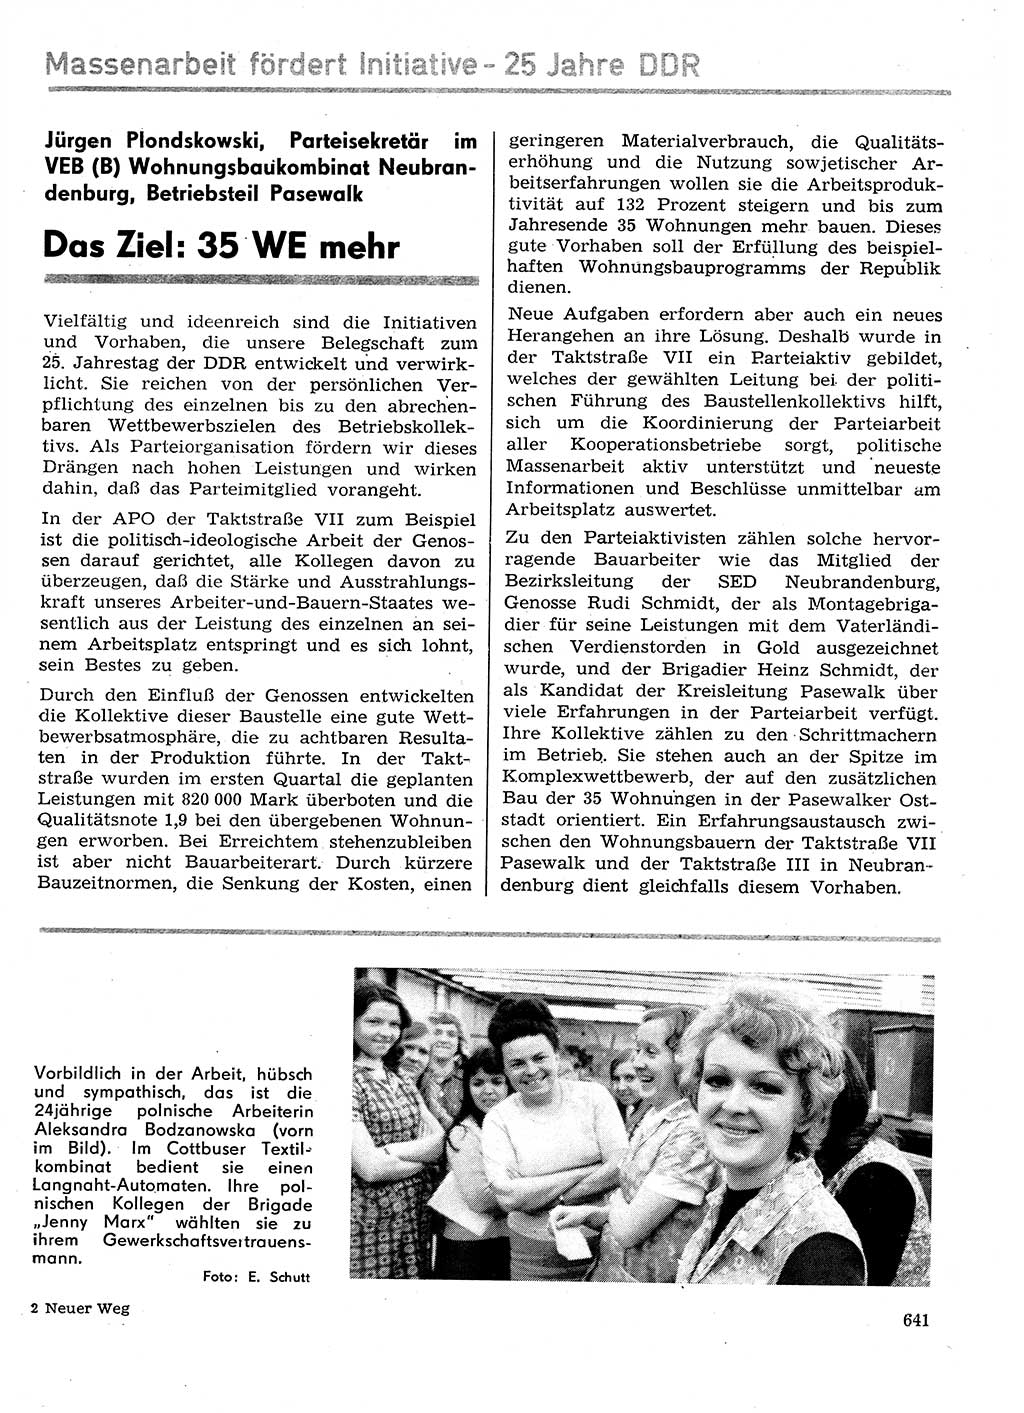 Neuer Weg (NW), Organ des Zentralkomitees (ZK) der SED (Sozialistische Einheitspartei Deutschlands) für Fragen des Parteilebens, 29. Jahrgang [Deutsche Demokratische Republik (DDR)] 1974, Seite 641 (NW ZK SED DDR 1974, S. 641)